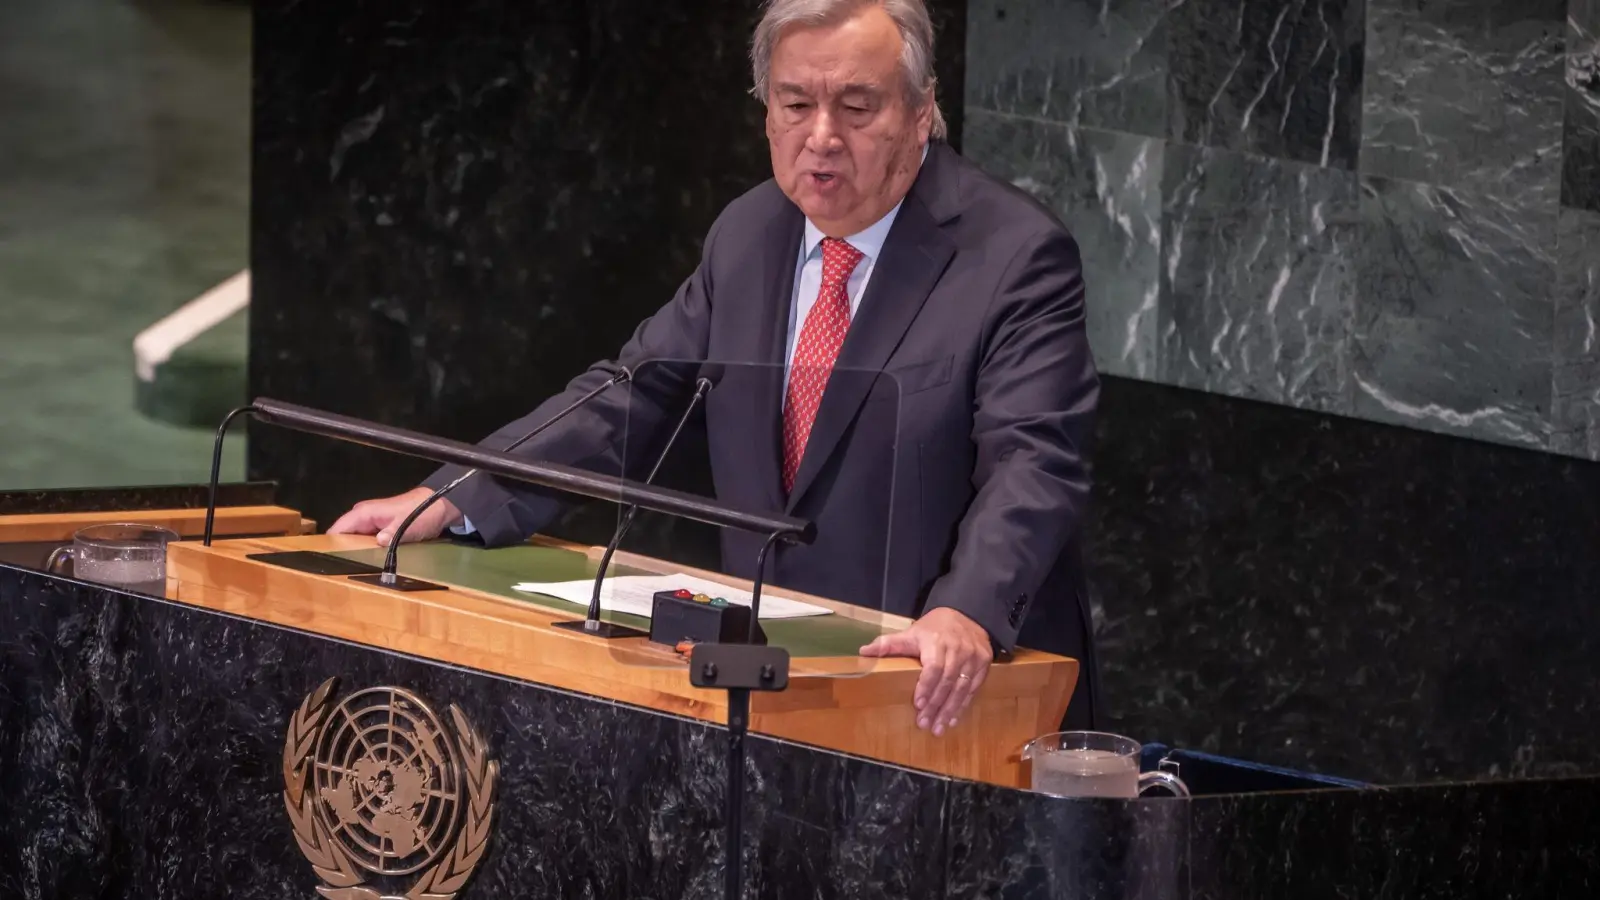 António Guterres spricht bei der Konferenz über Stand der Nachhaltigkeitsziele der Vereinten Nationen. (Foto: Michael Kappeler/dpa)